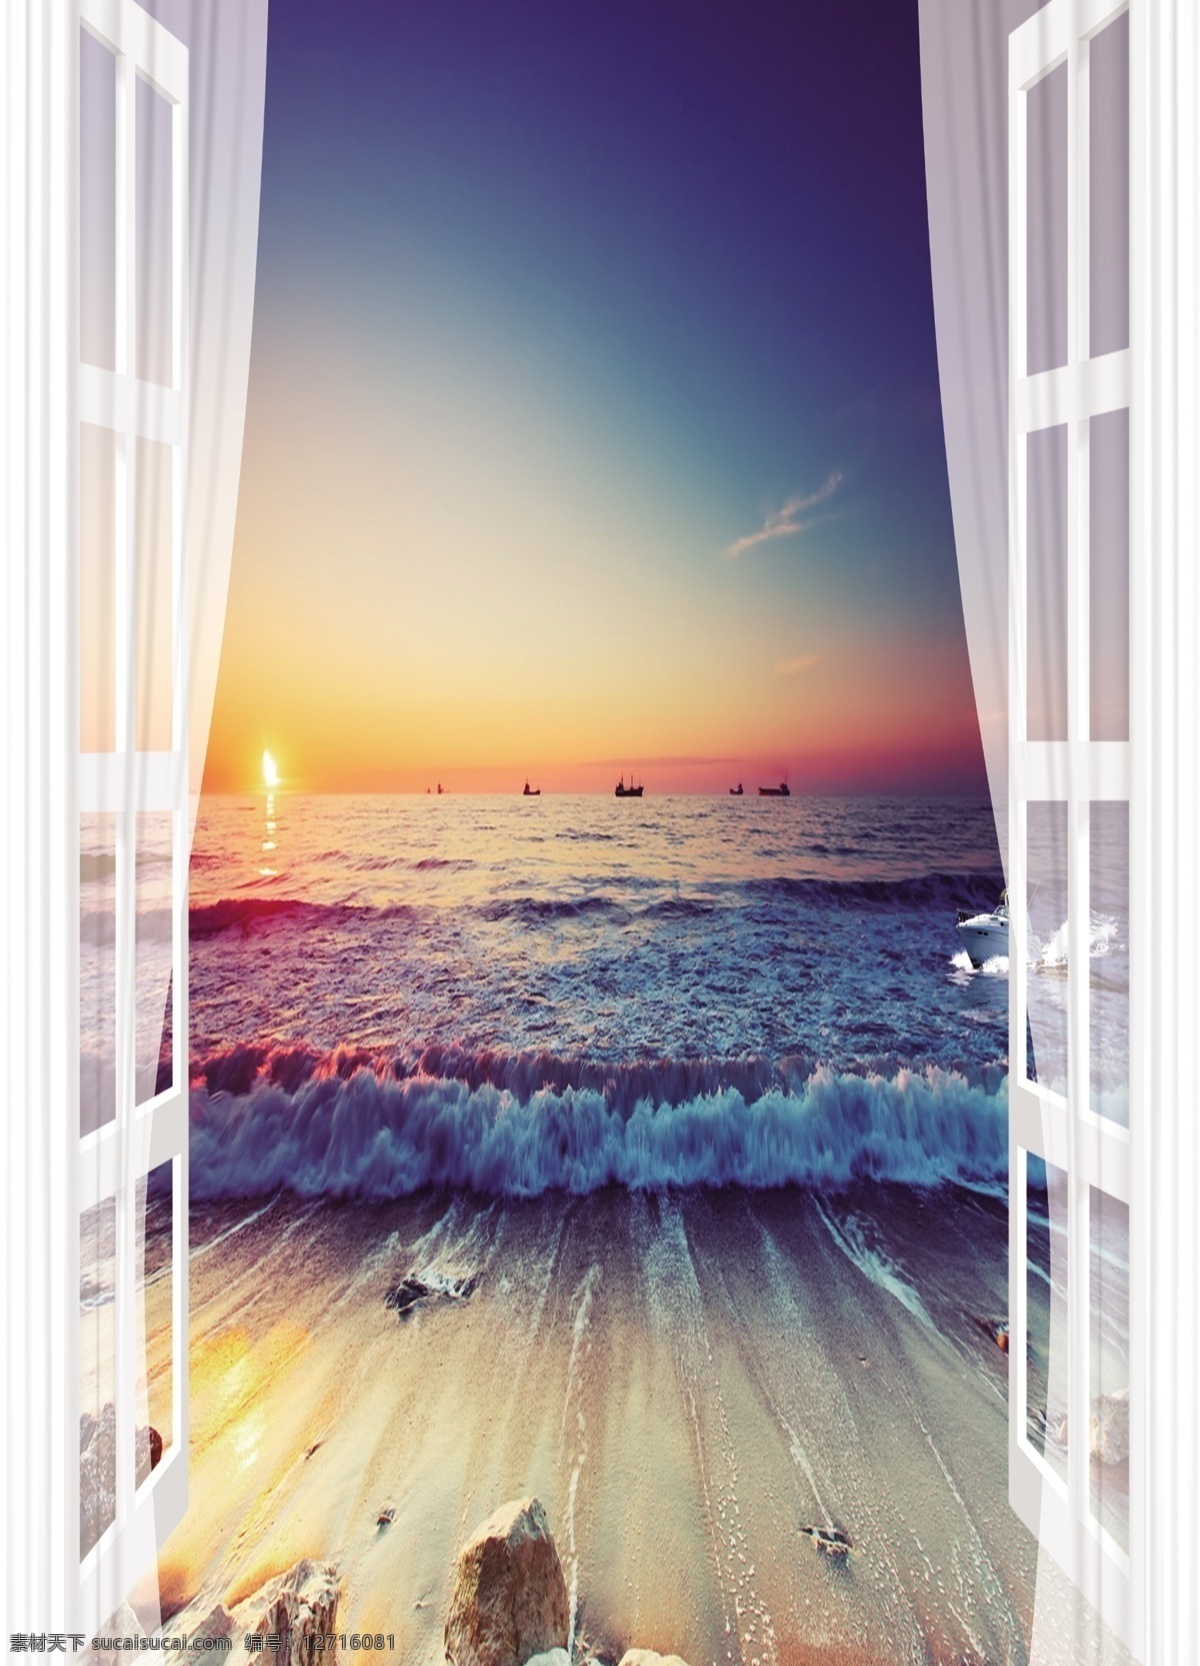 窗户 风景 图 3d窗户 立体 空间 蓝天 极光 大海 甲板 夕阳 墙 砖墙 窗帘 移门图案